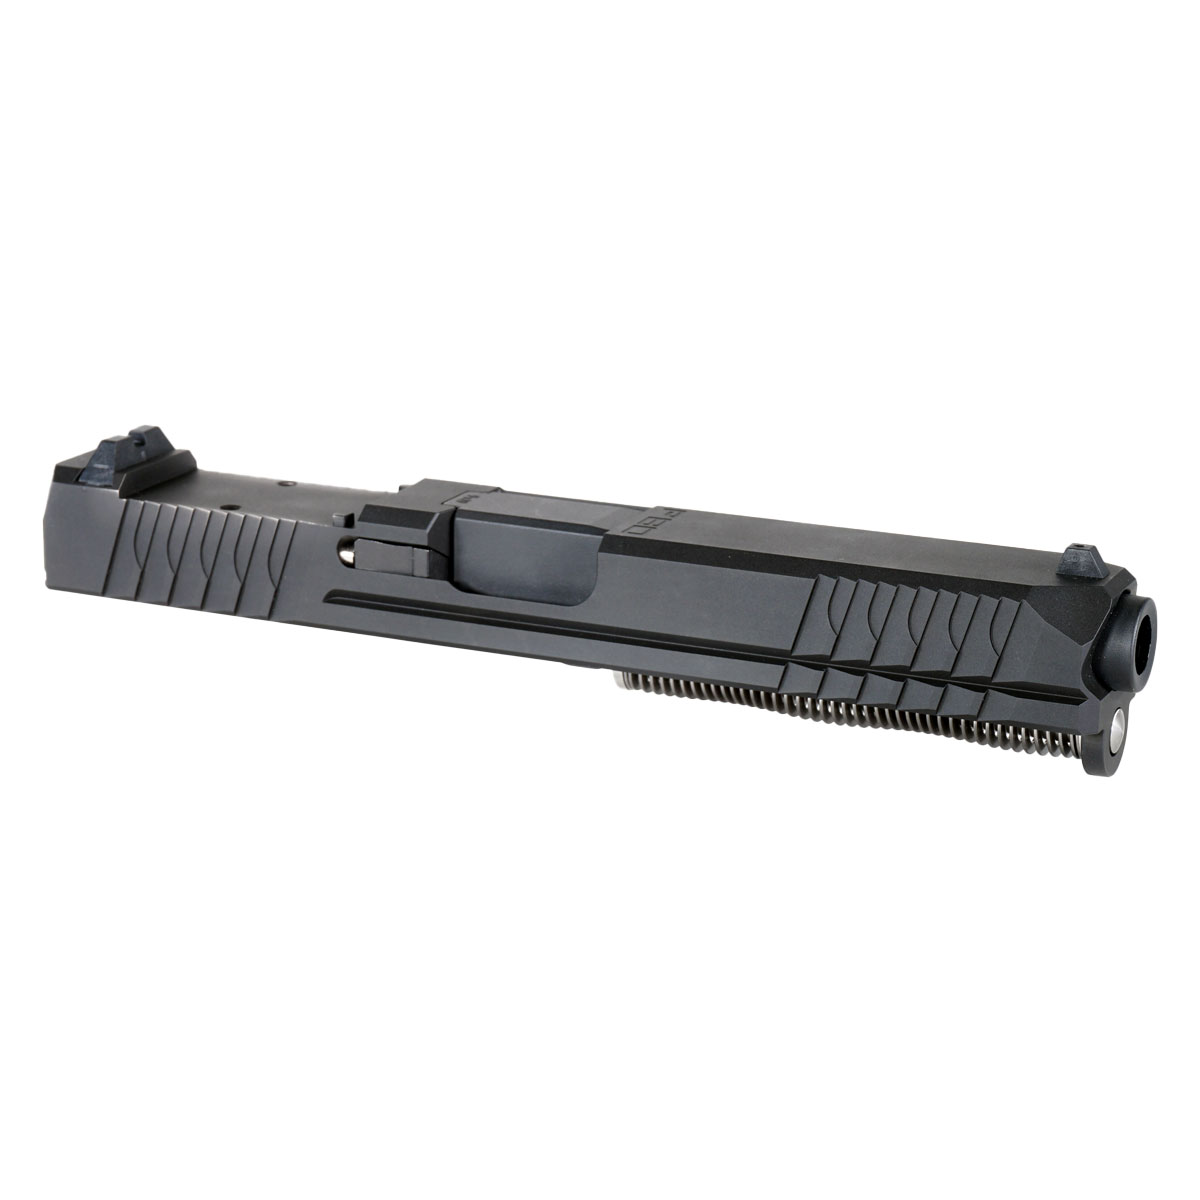 DDS 'Terrafluid' 9mm Complete Slide Kit - Glock 17 Gen 1-3 Compatible